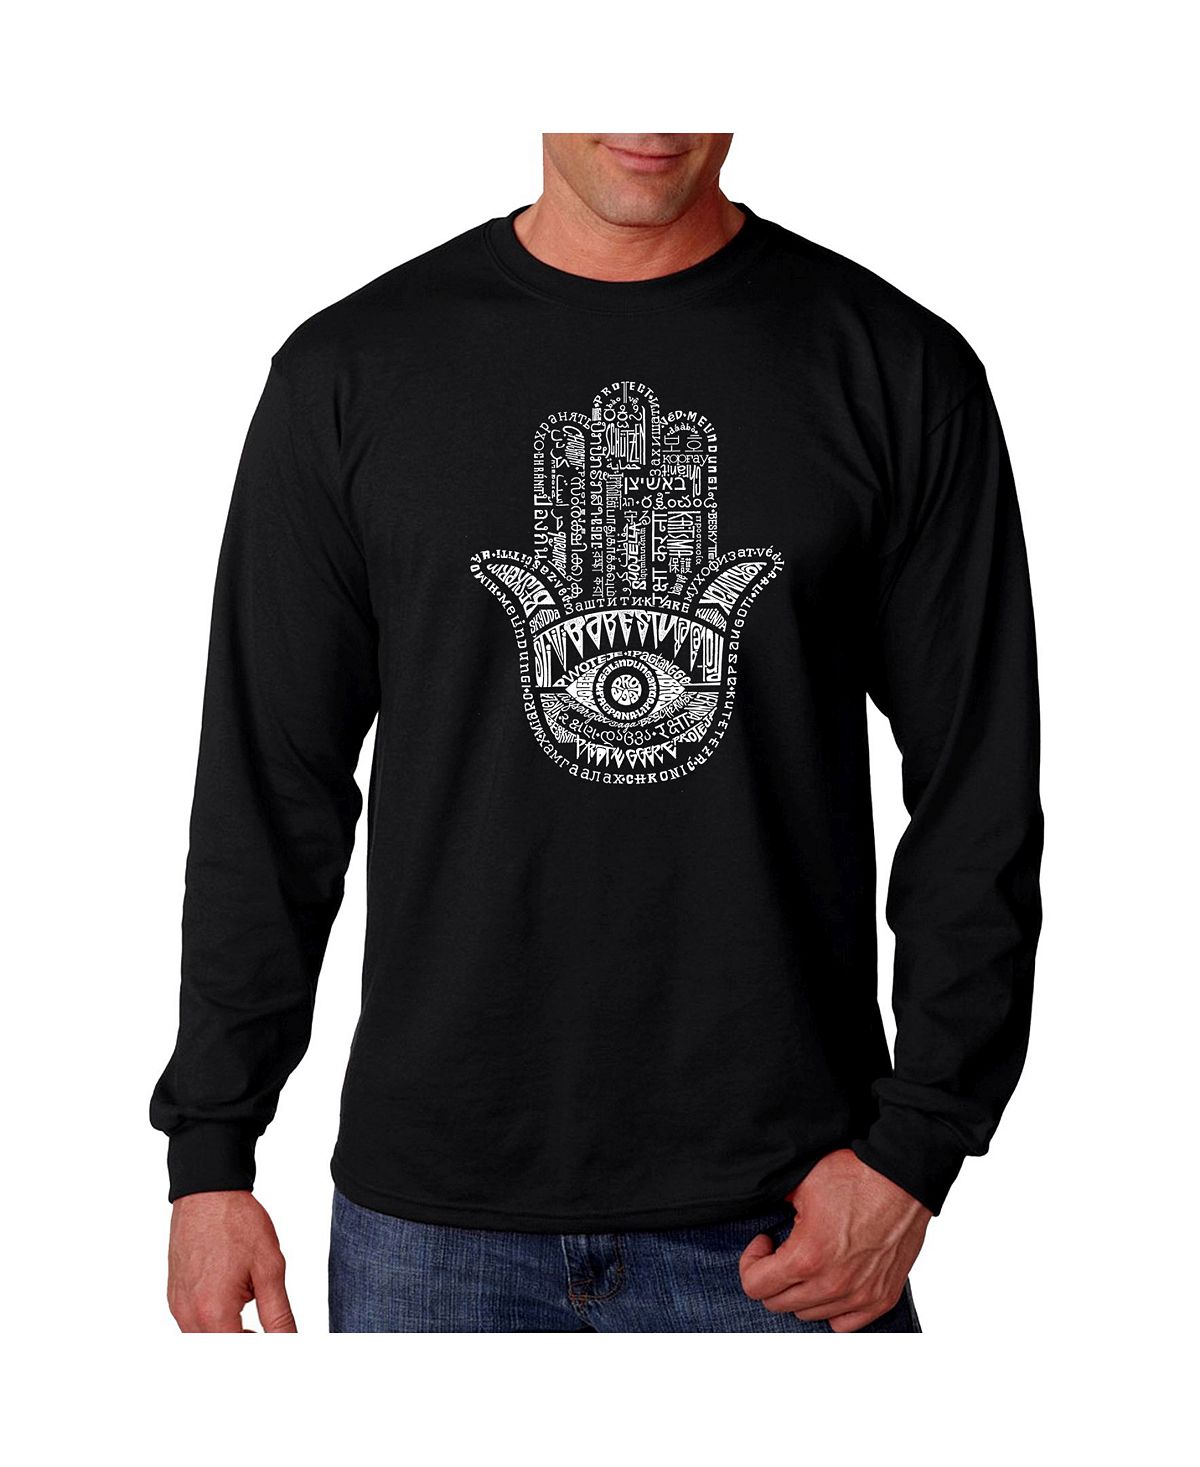 Мужская футболка с длинным рукавом word art - хамса LA Pop Art, черный 250г тхина hamsa